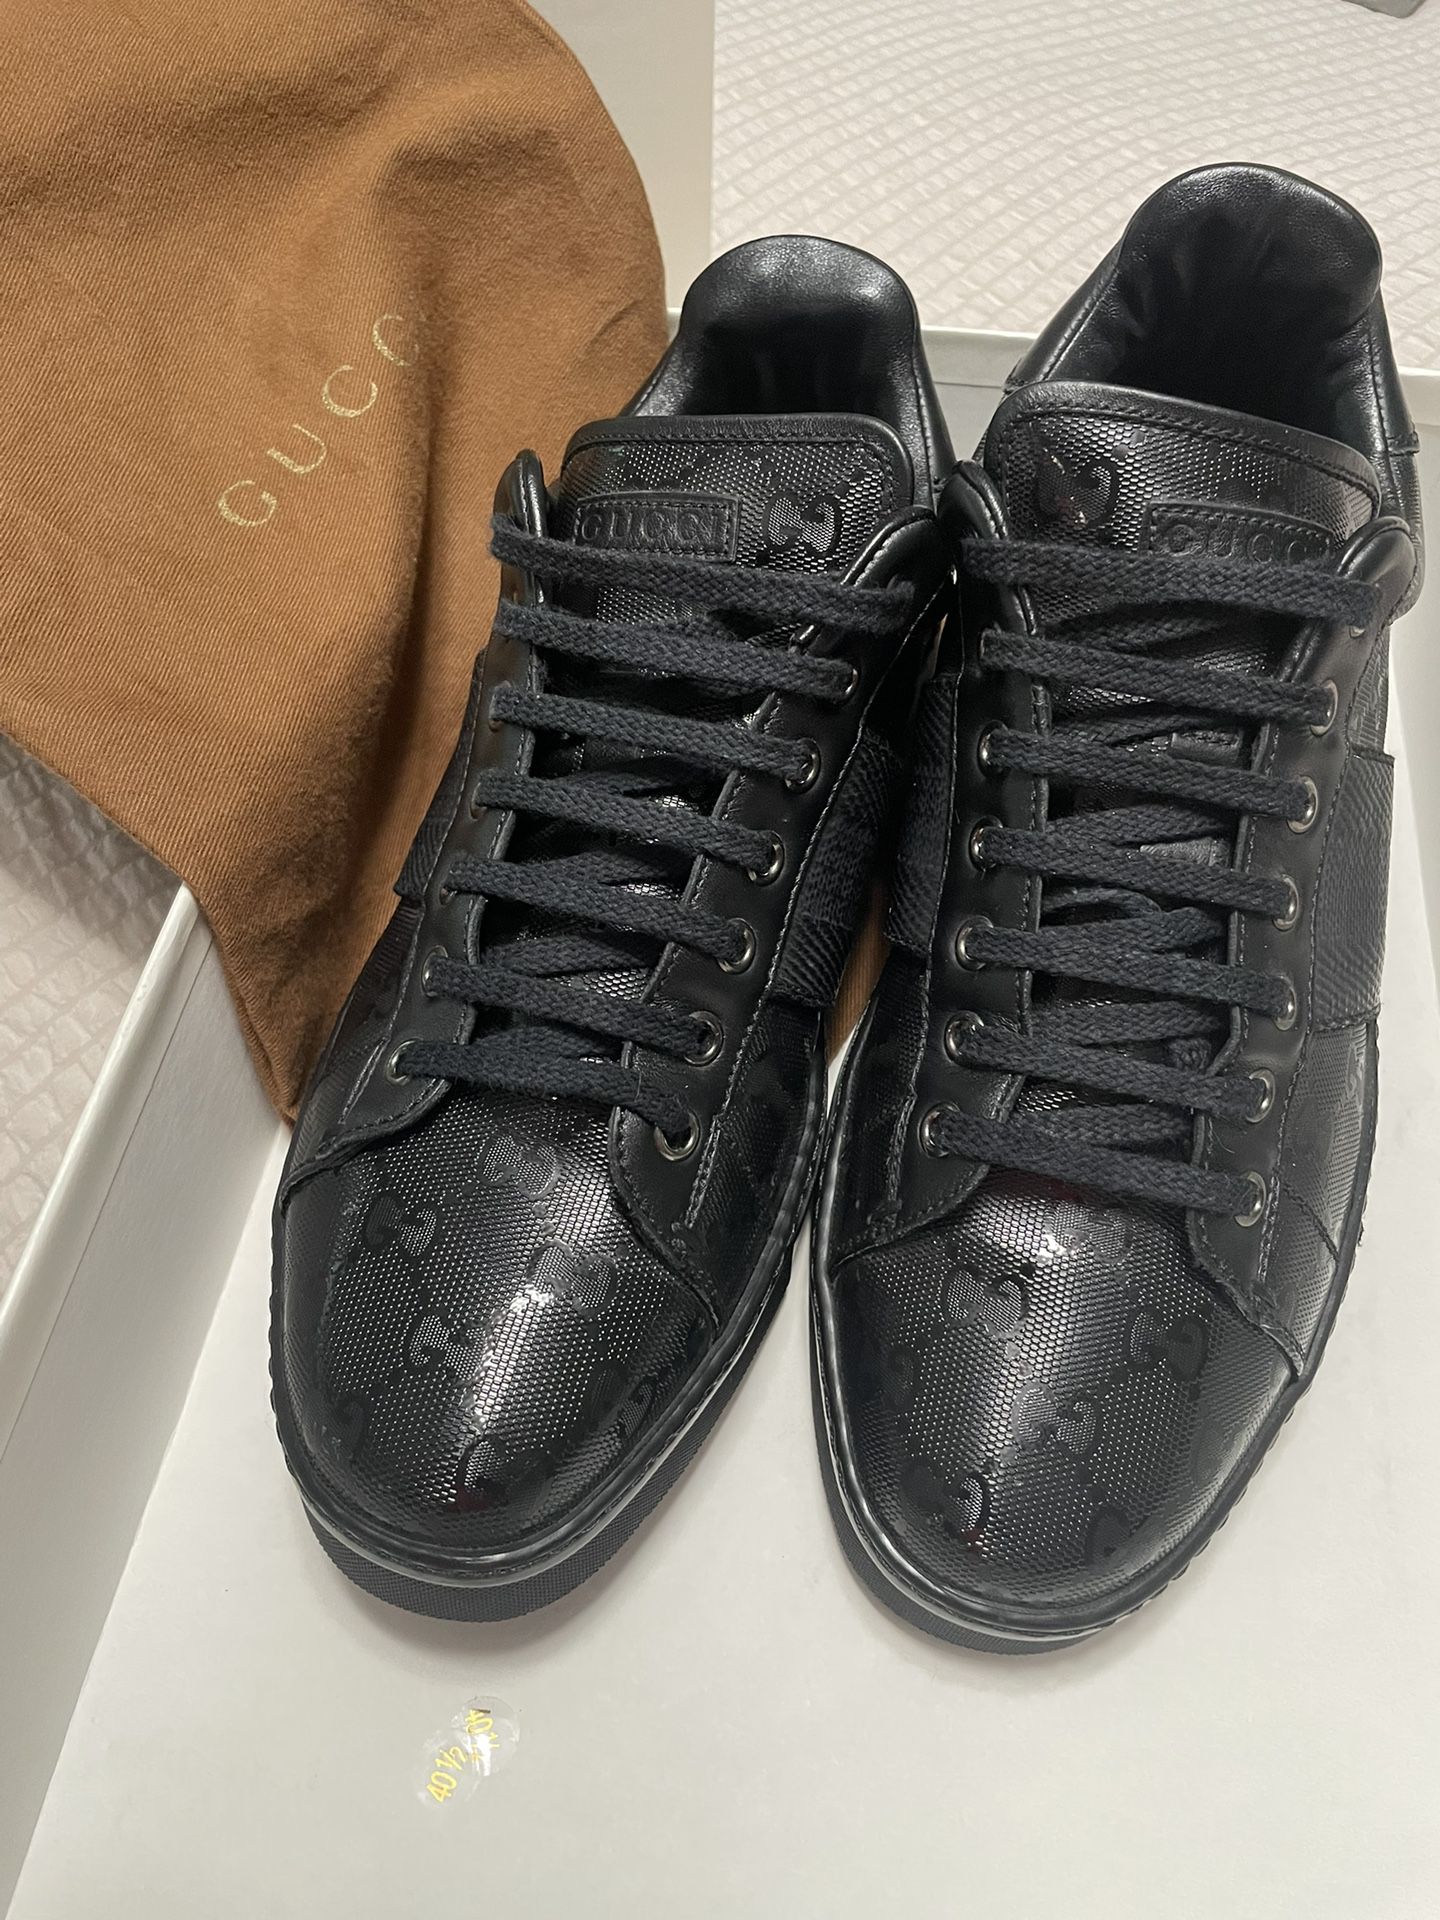 Gucci  Men’s Shoes  Size 8 